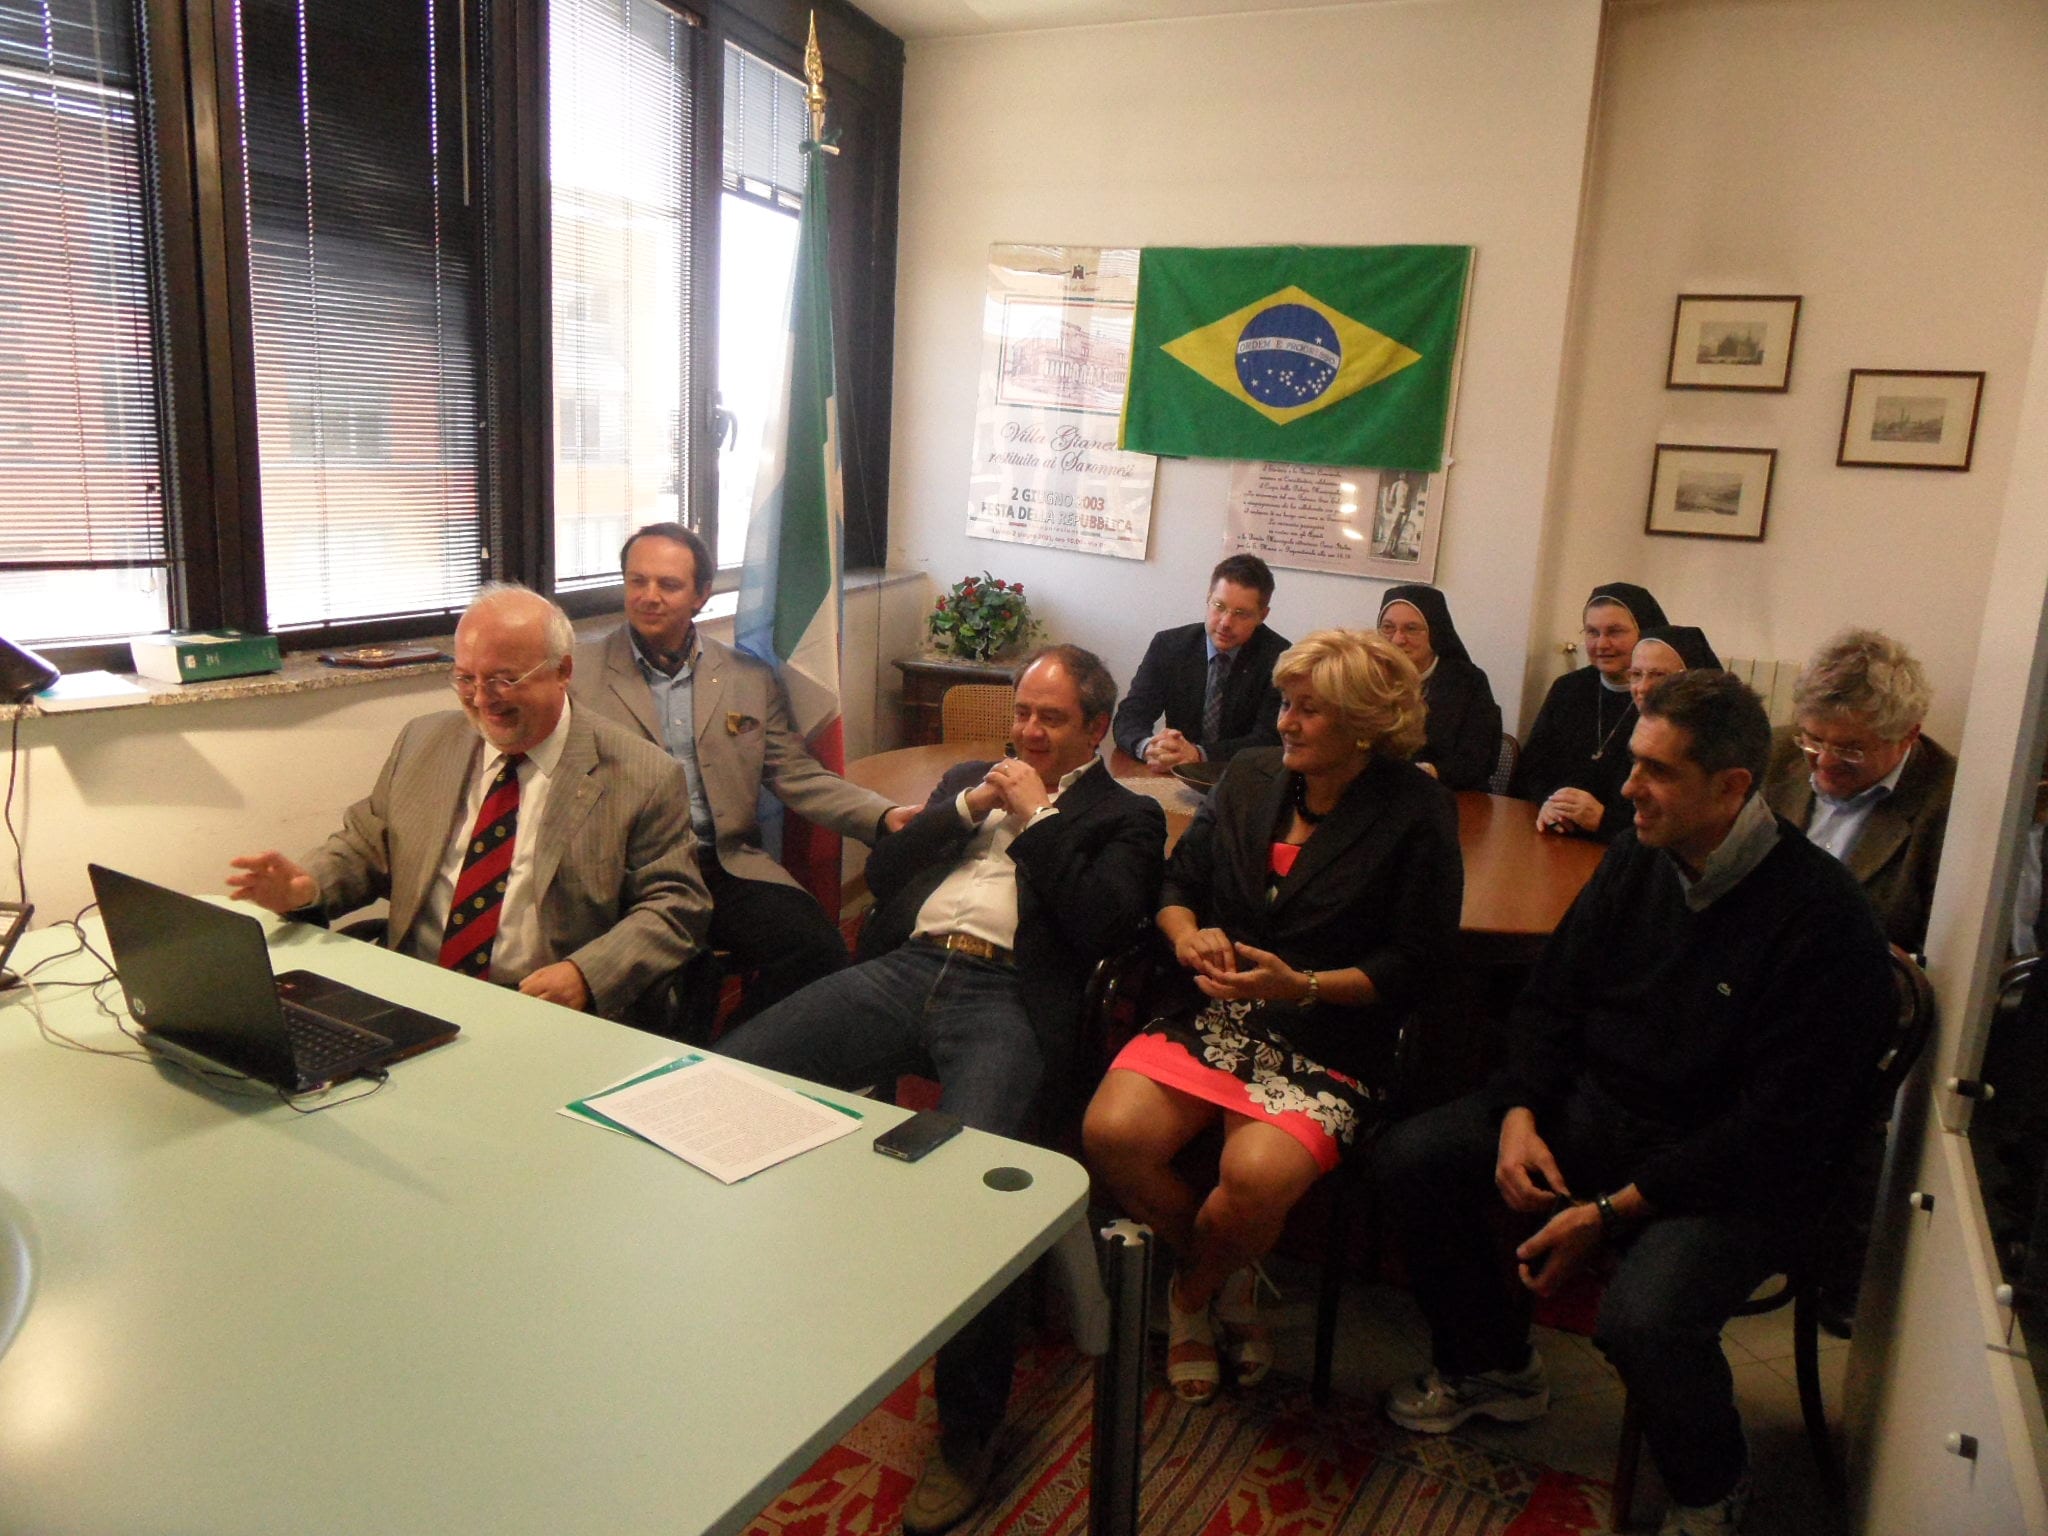 Rotary club Saronno protagonista di un’inaugurazione in Brasile grazie alla videoconferenza